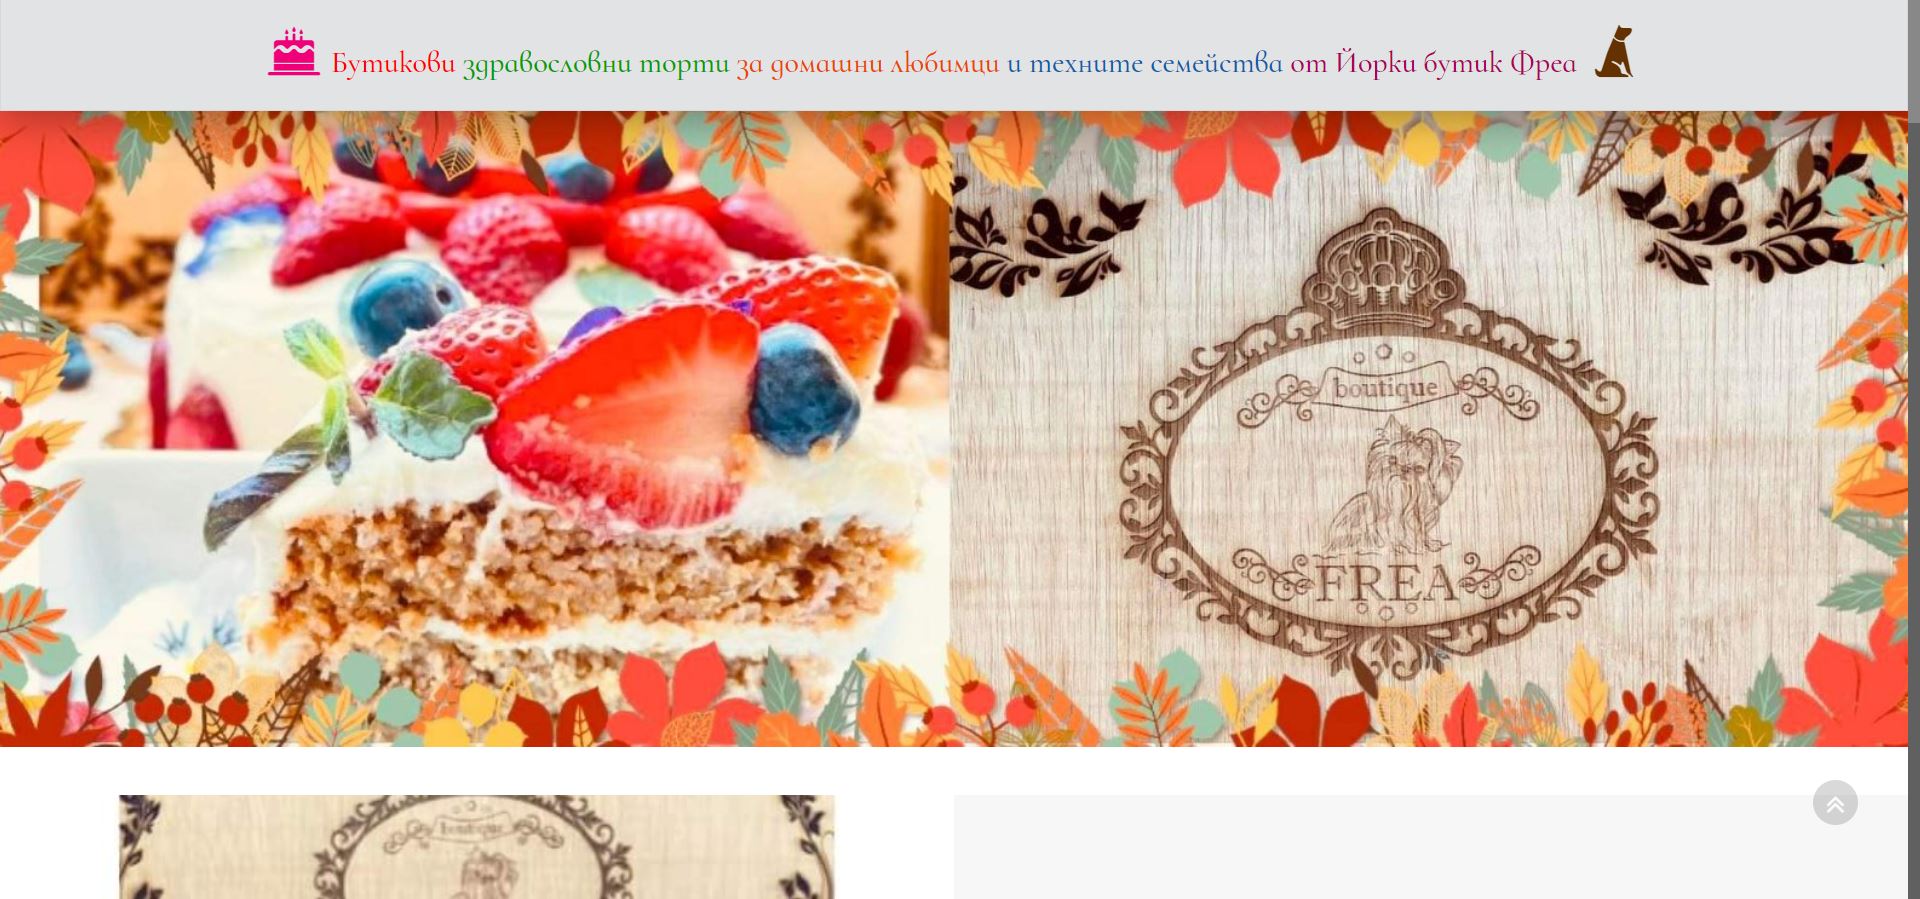 Бутикови здравословни торти за домашни любимци и техните семейства от Йорки бутик Фреа Варна